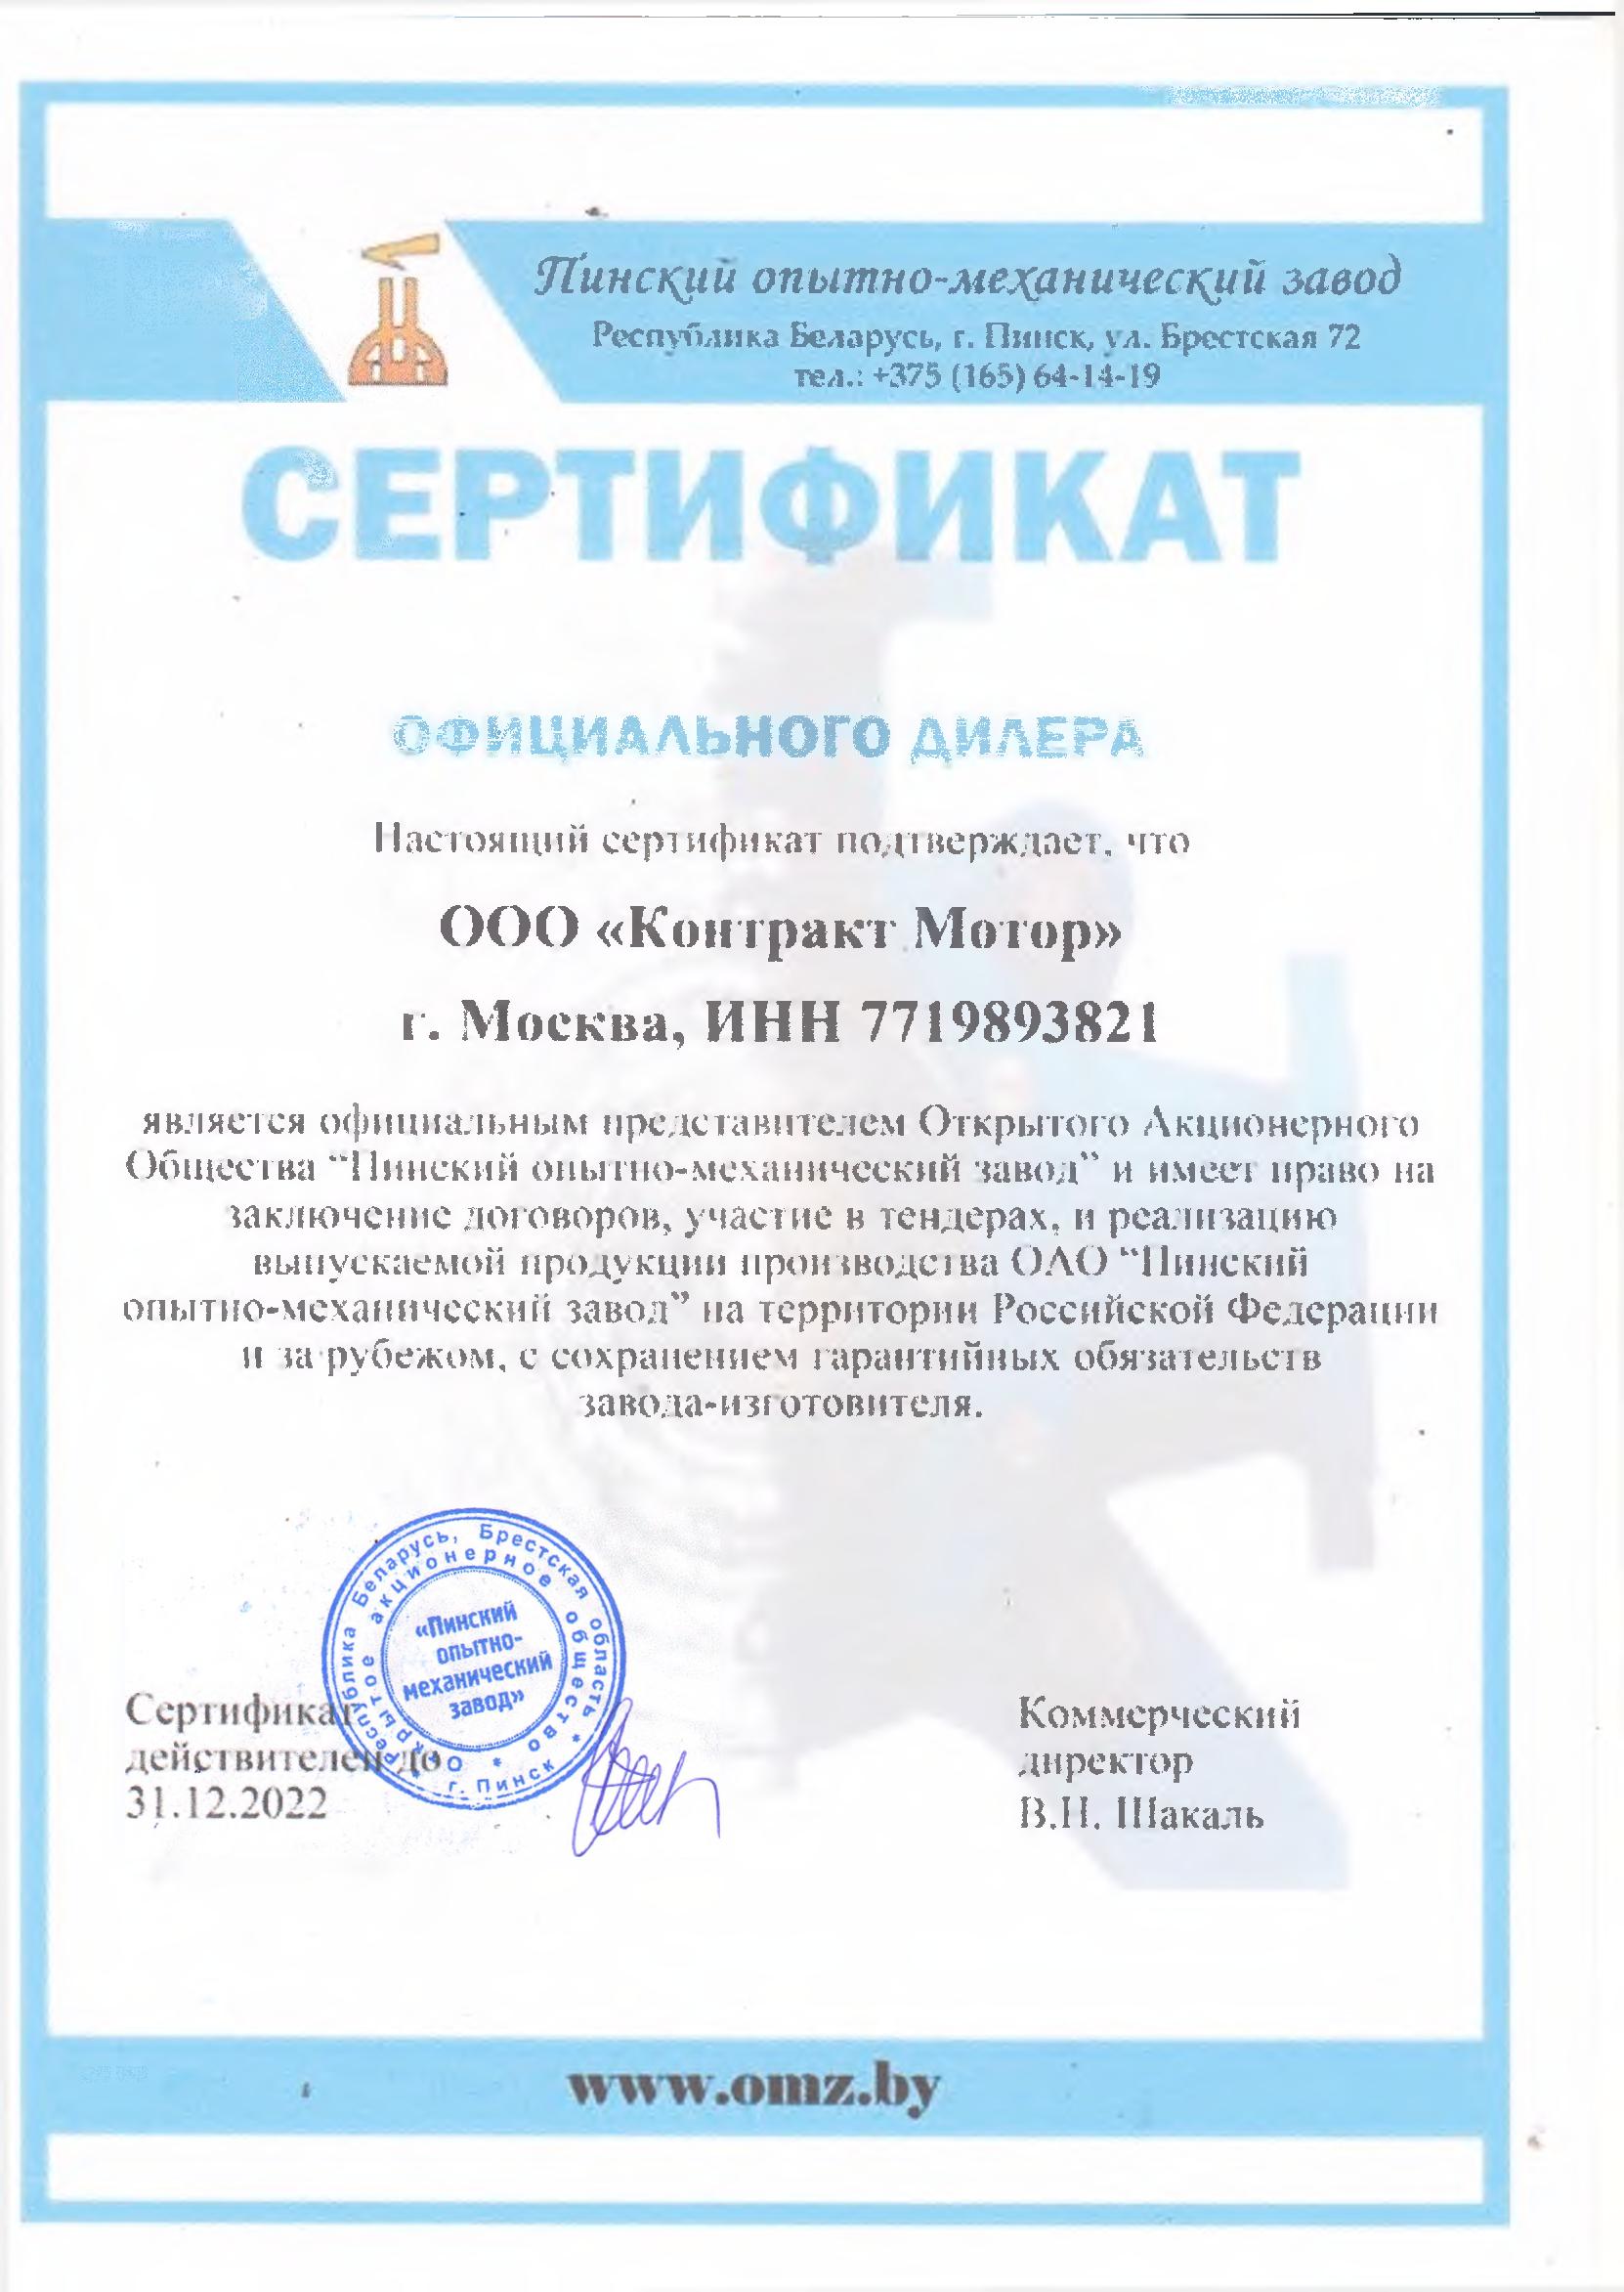 Сертификат ОАО «Пинский опытно-механический завод»